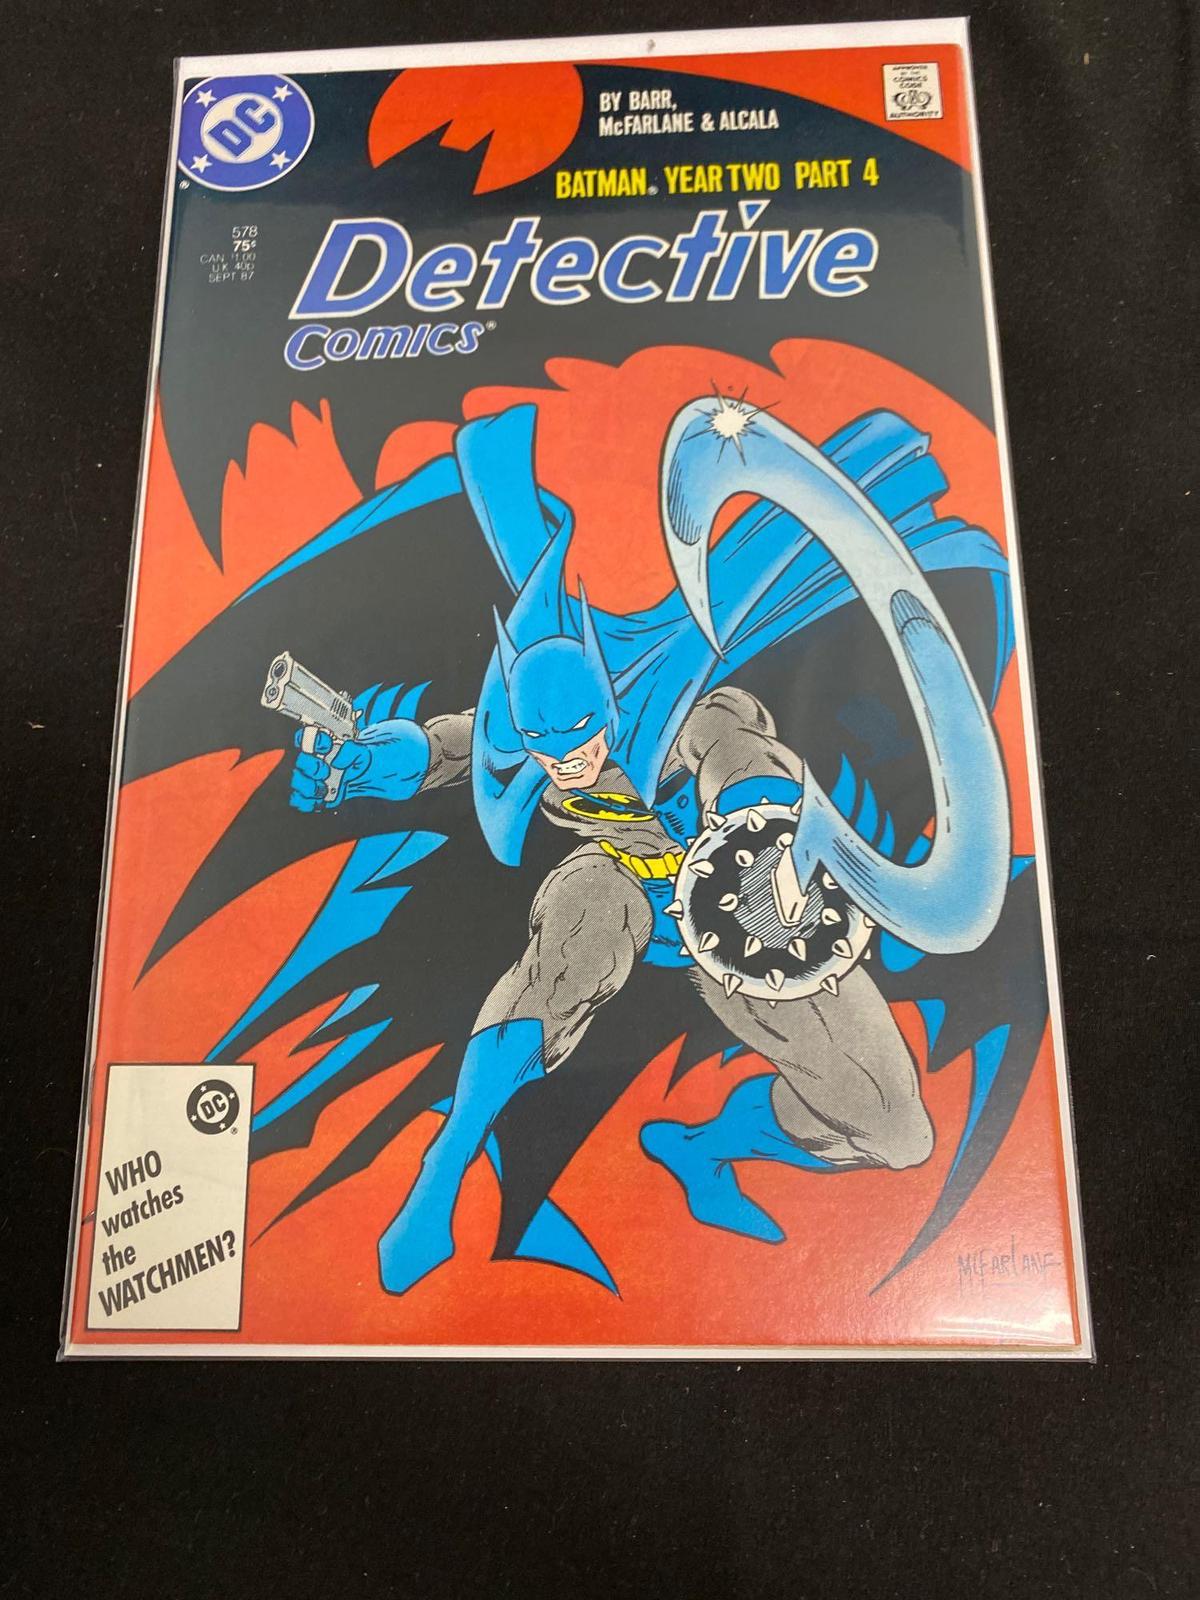 DC Comics, Detective Comics Batman Year Two Part 4 #578-Comic Book